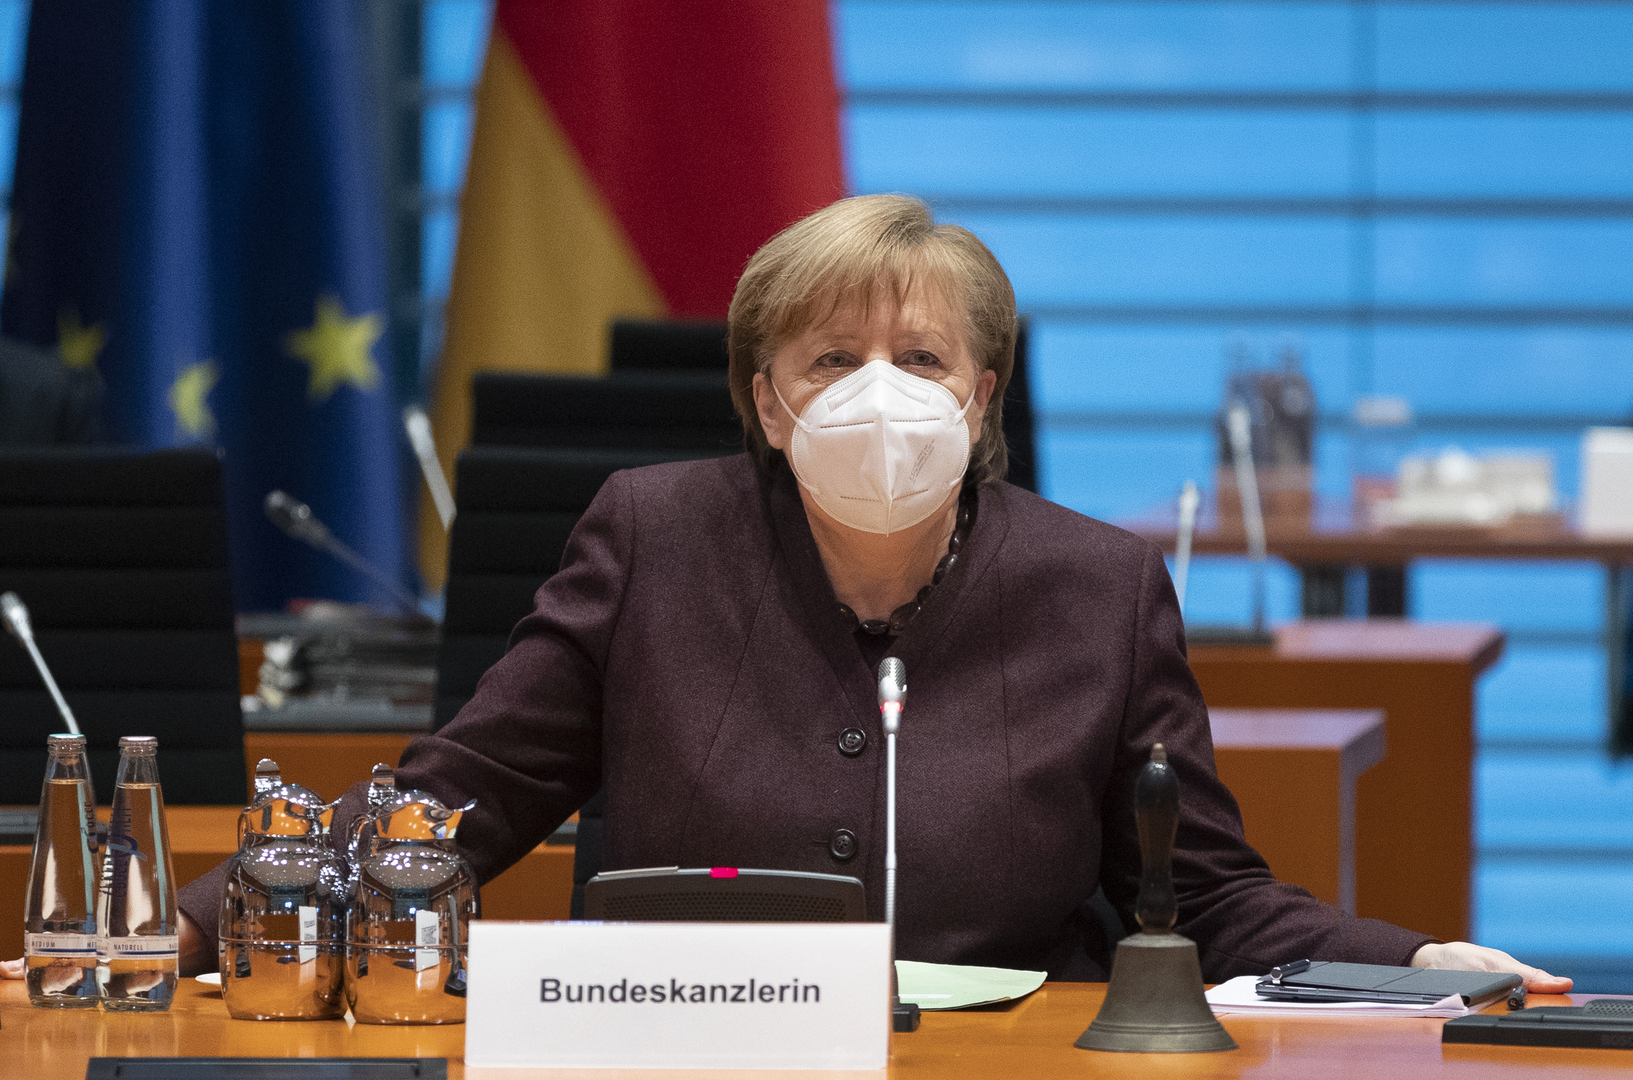 سلطات ألمانيا تمدد إجراءات الإغلاق في البلاد حتى الـ7 من مارس